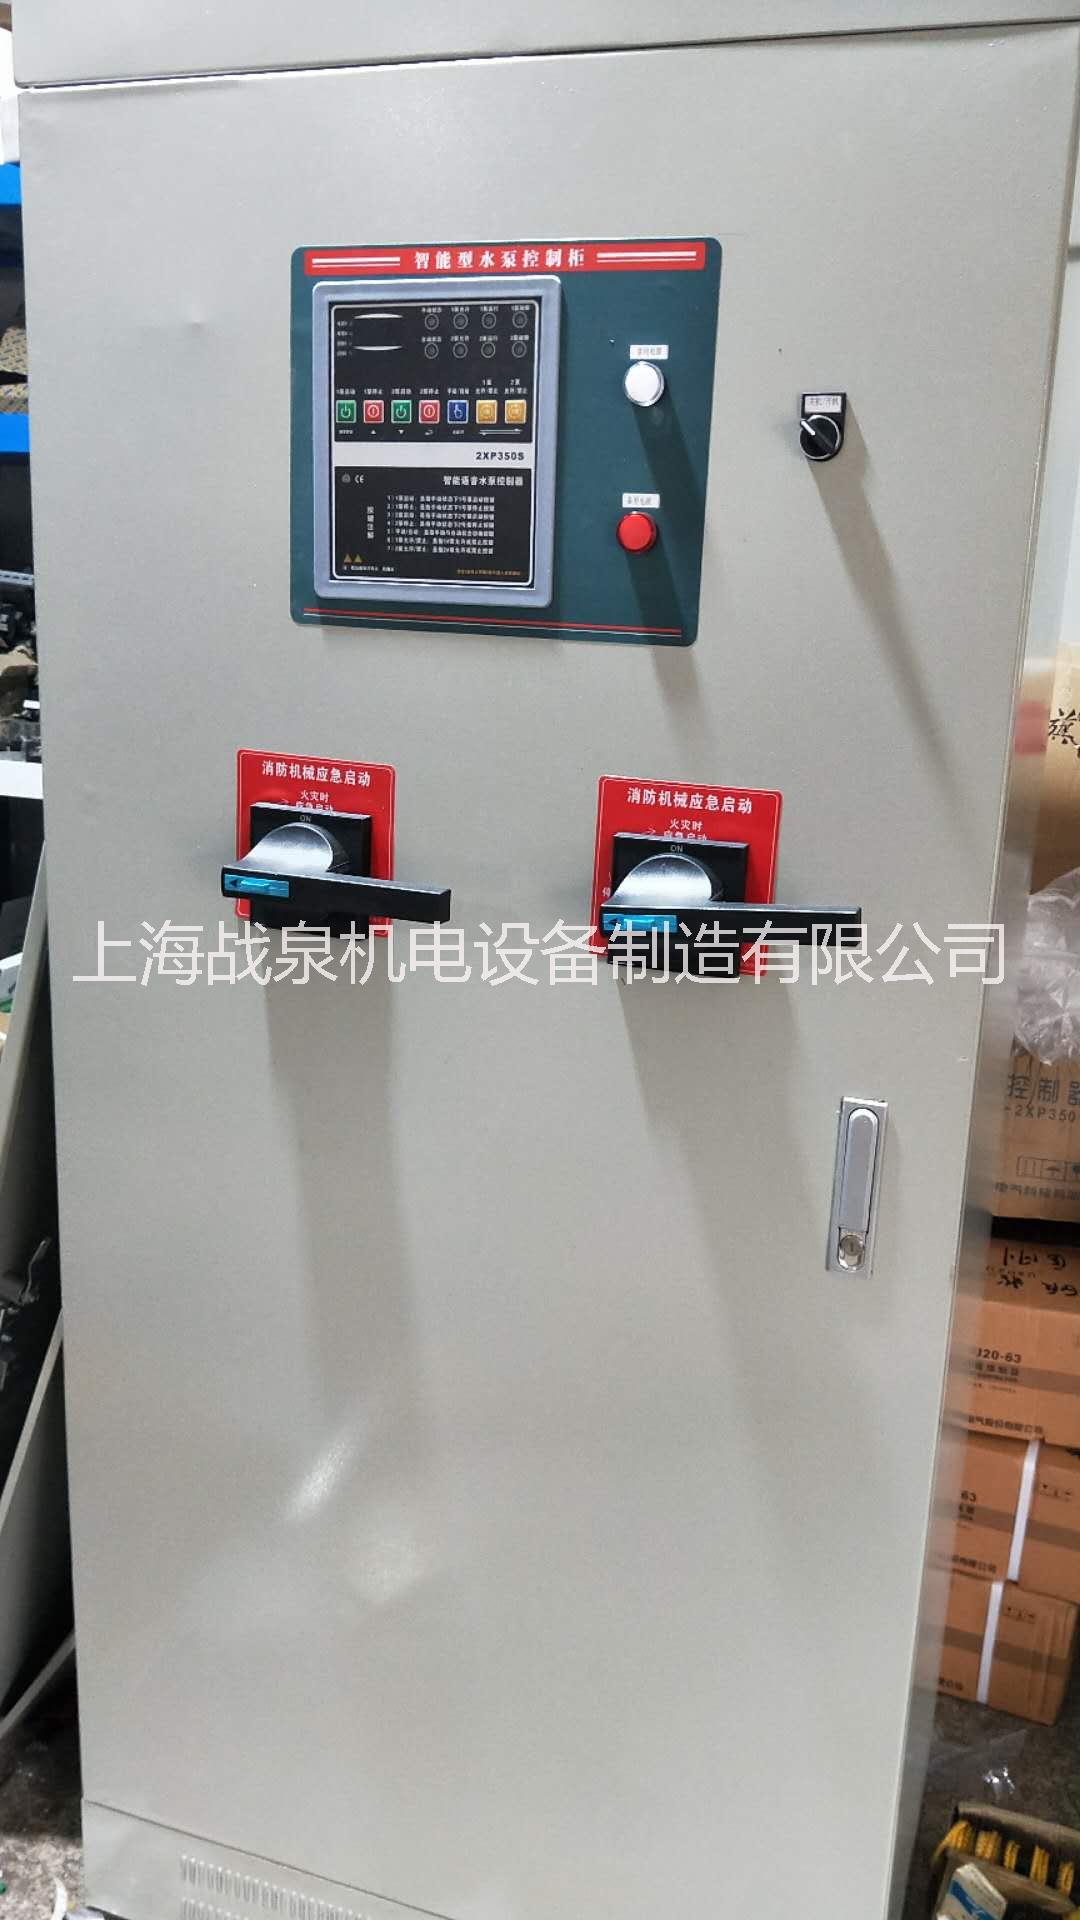 上海市水泵专用控制柜厂家水泵专用控制柜 星三角控制柜 变频控制柜 直启消防压力控制柜 直启液位控制柜 哪里可能买到 水泵专用控制柜